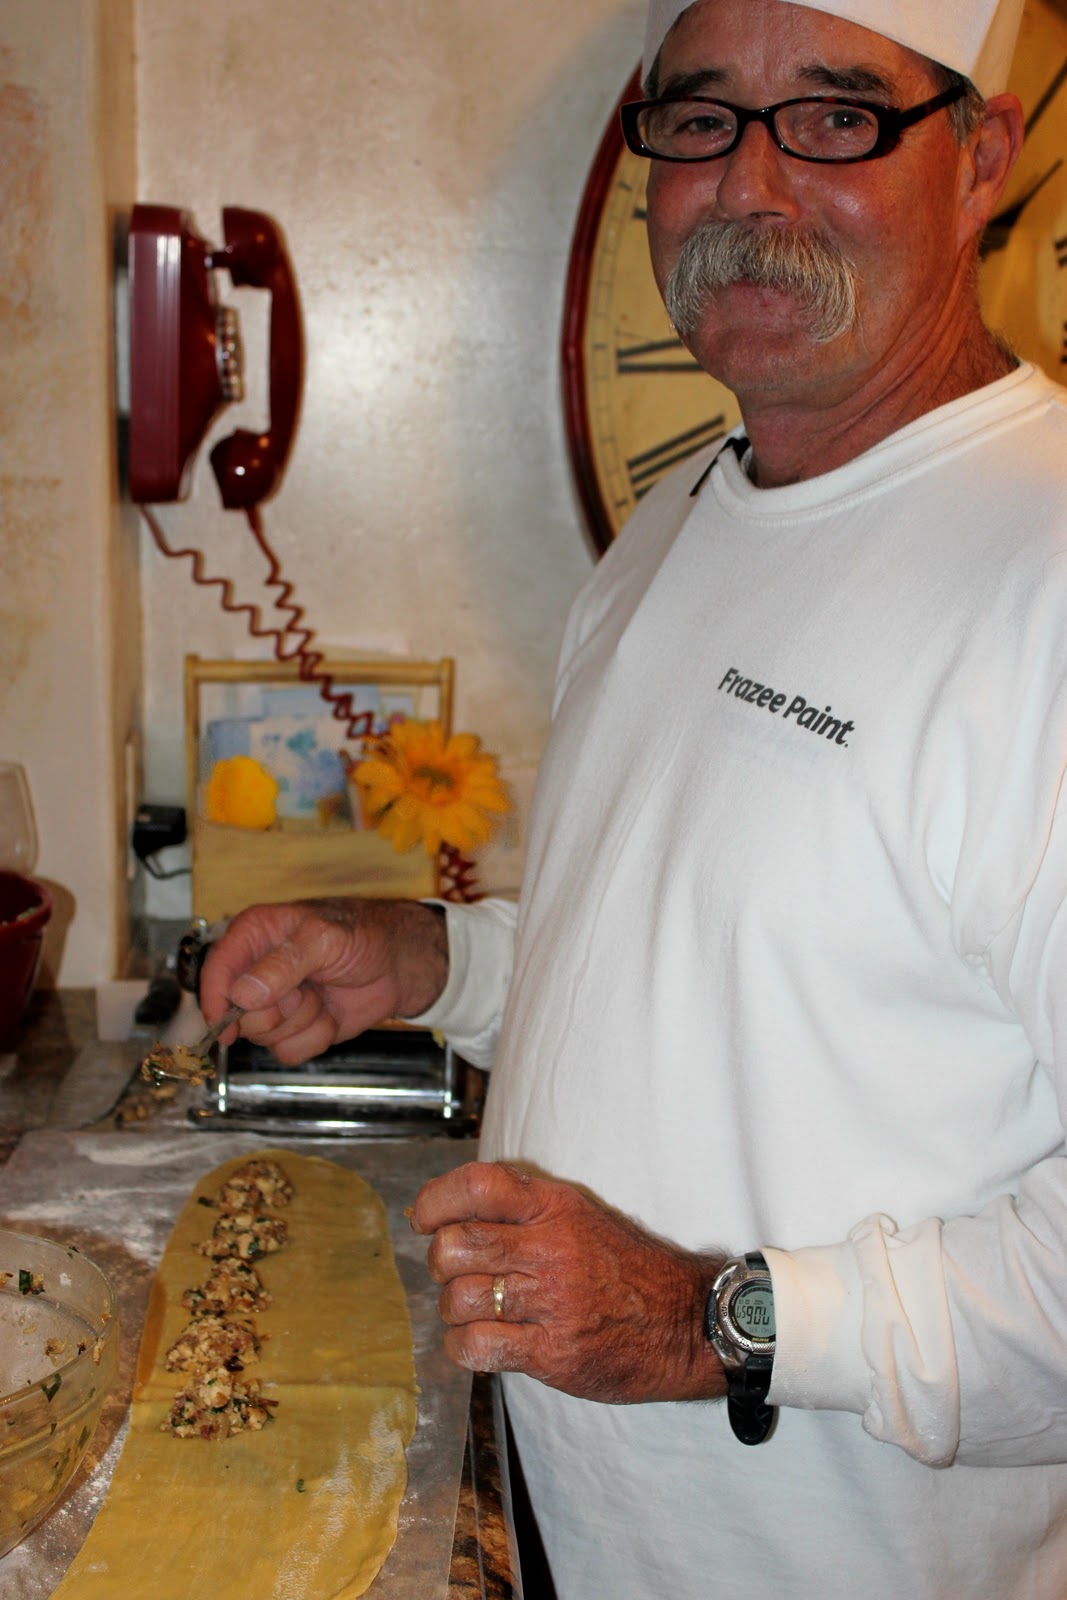 http://2.bp.blogspot.com/-Rgkz0M27ifs/Tsh3t0wsbaI/AAAAAAAAAfU/_7bP72YTksI/s1600/Tony+making+Chicken+Ravioli.jpg